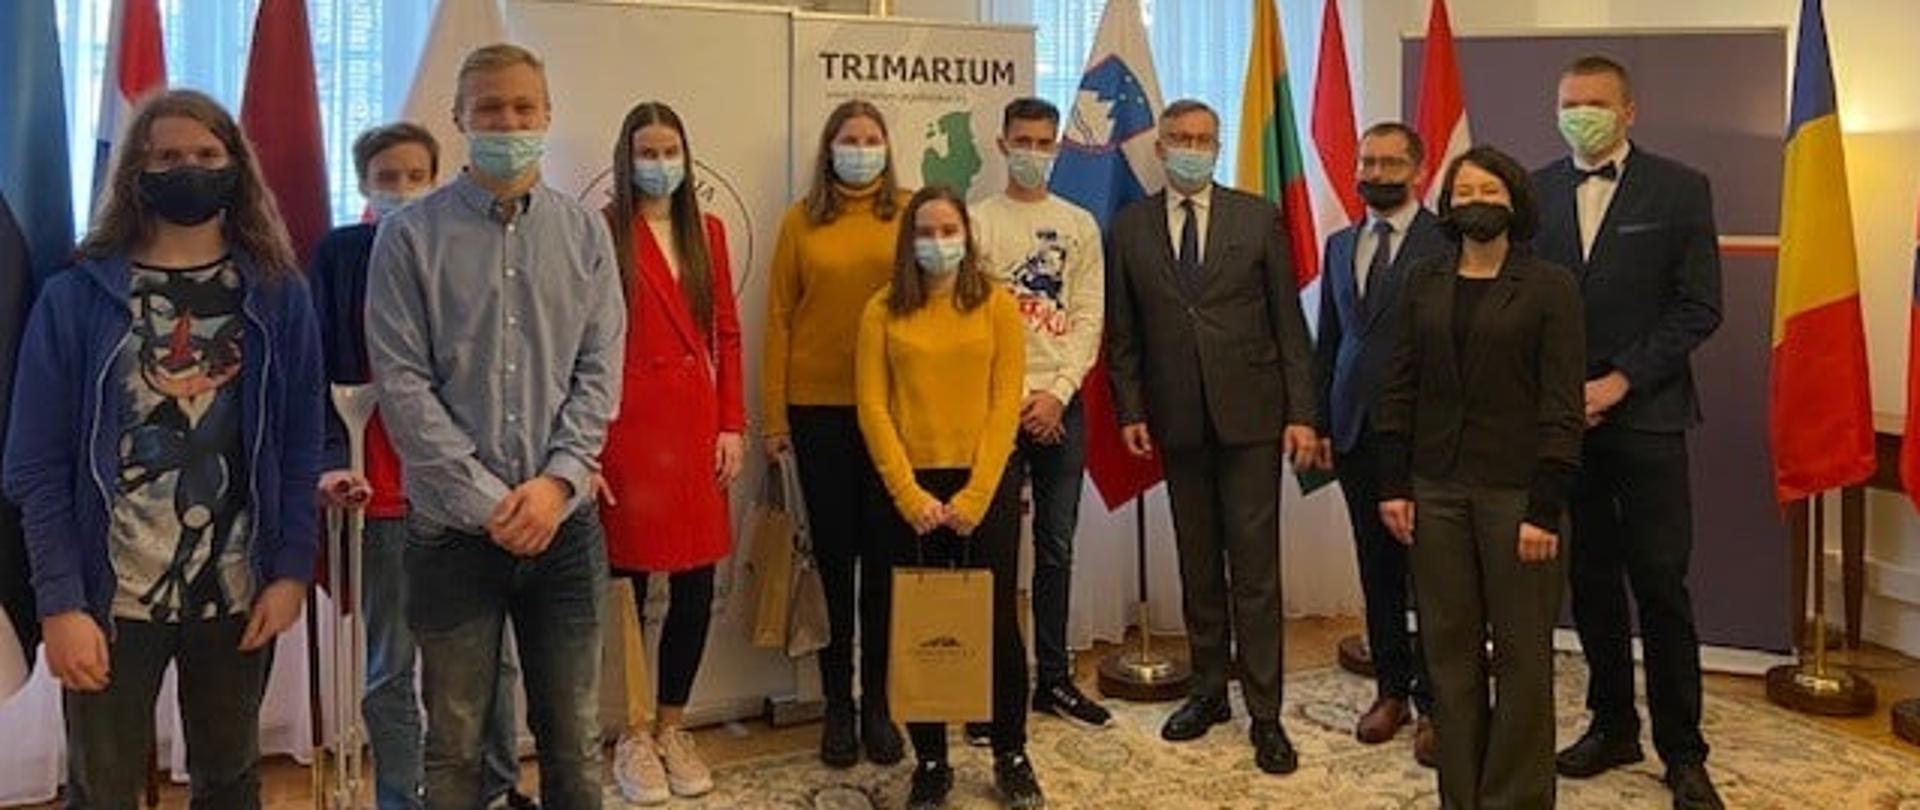 
Zwycięzcy projektu Trimarium w Ambasadzie RP w Lublanie
